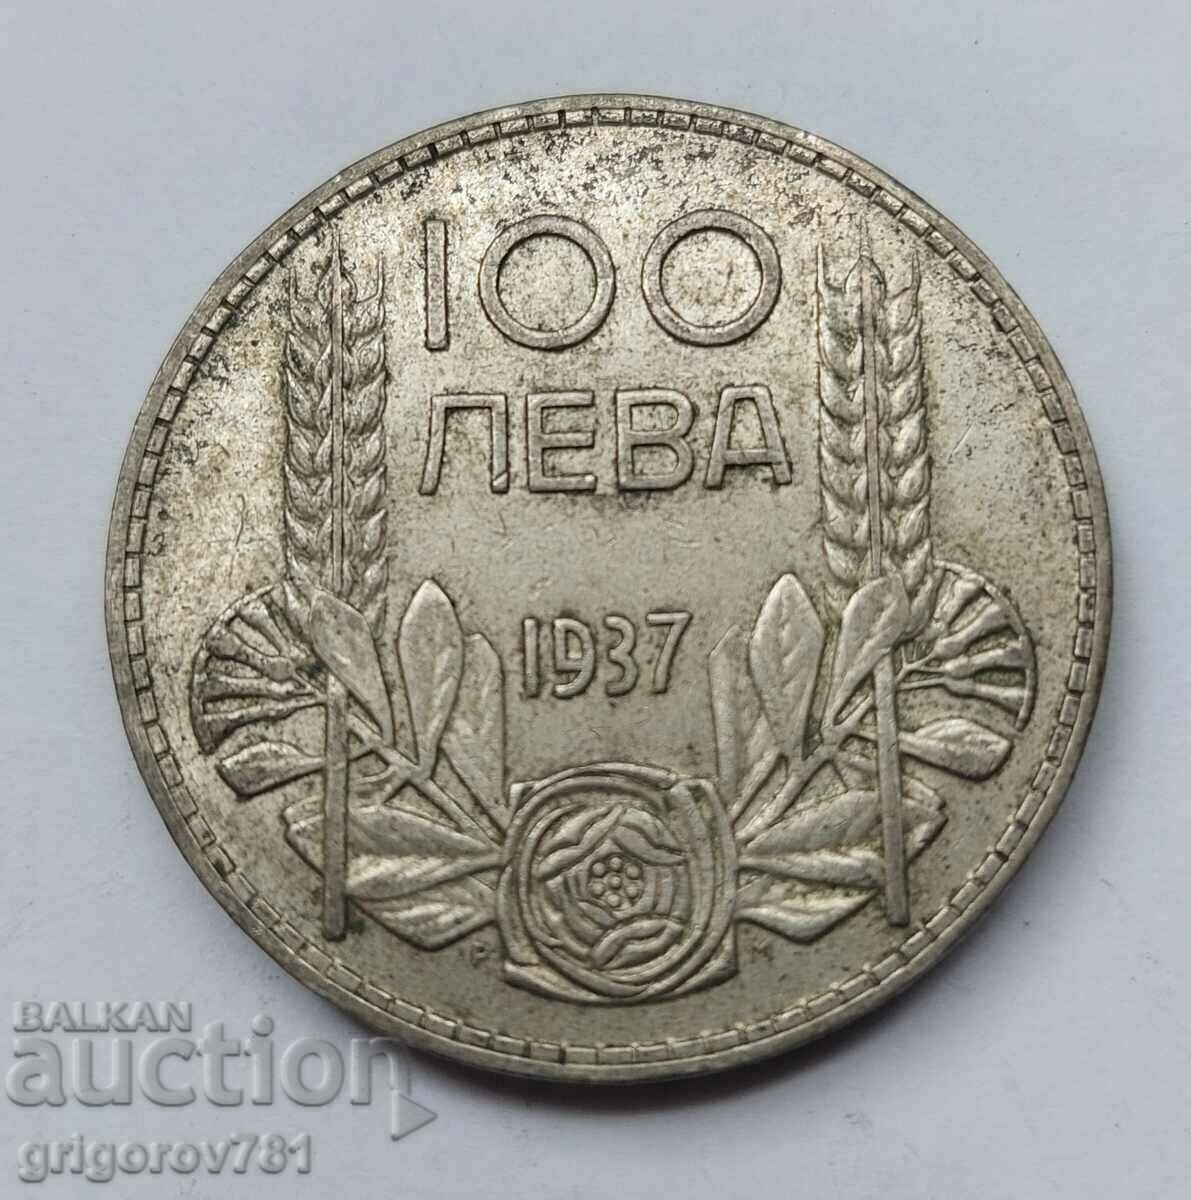 100 leva silver Bulgaria 1937 - silver coin #21